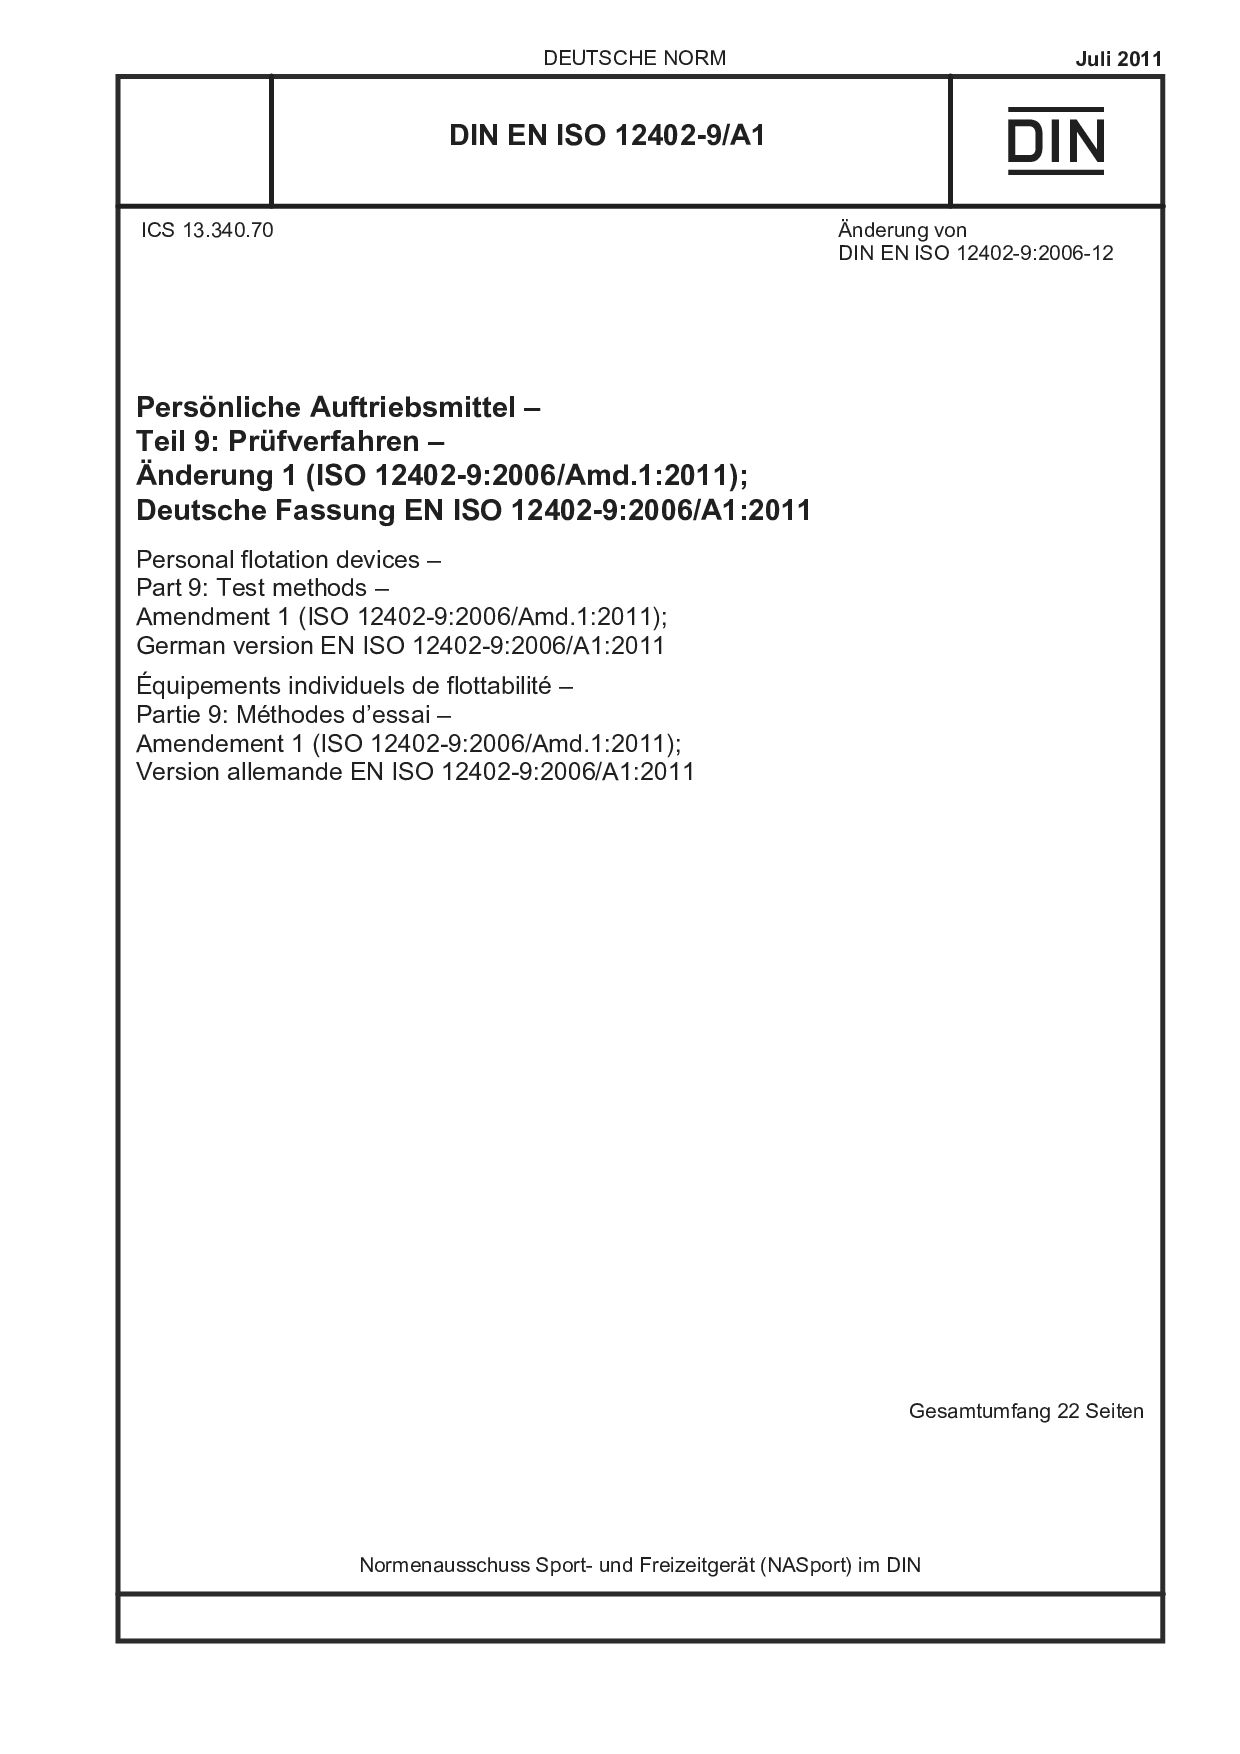 DIN EN ISO 12402-9/A1:2011